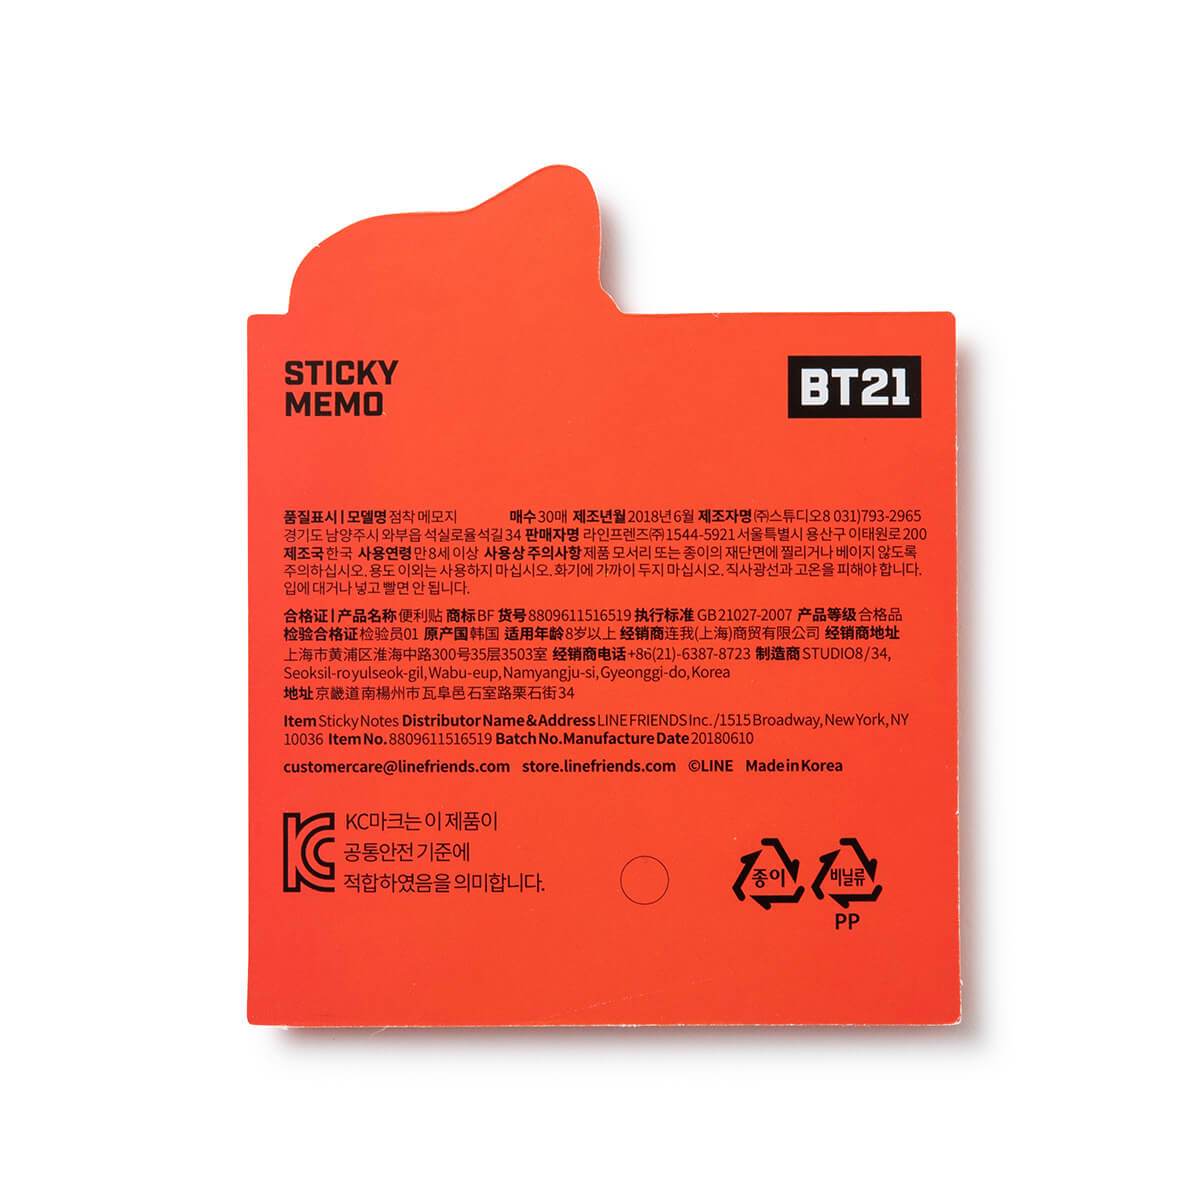 BT21 RJ BITE Sticky Note